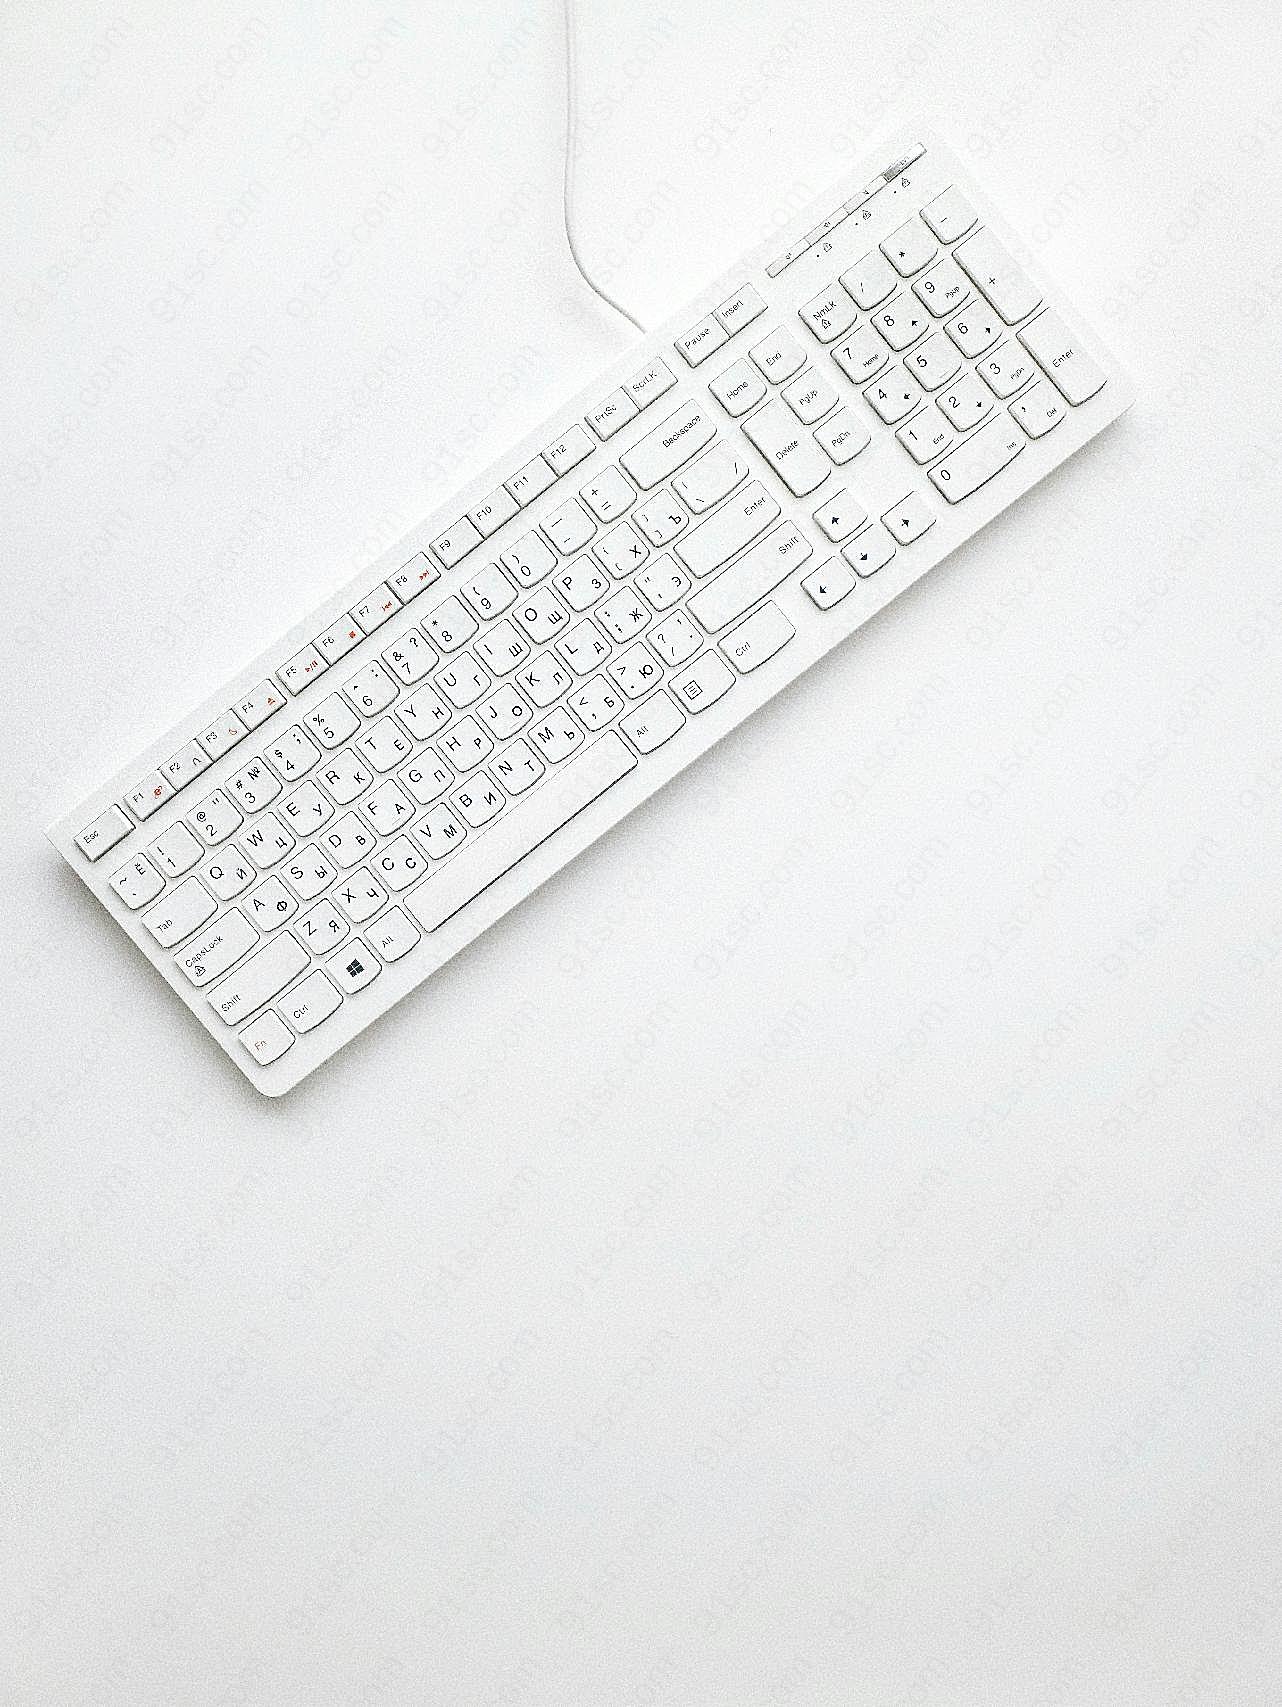 台式电脑键盘图片现代